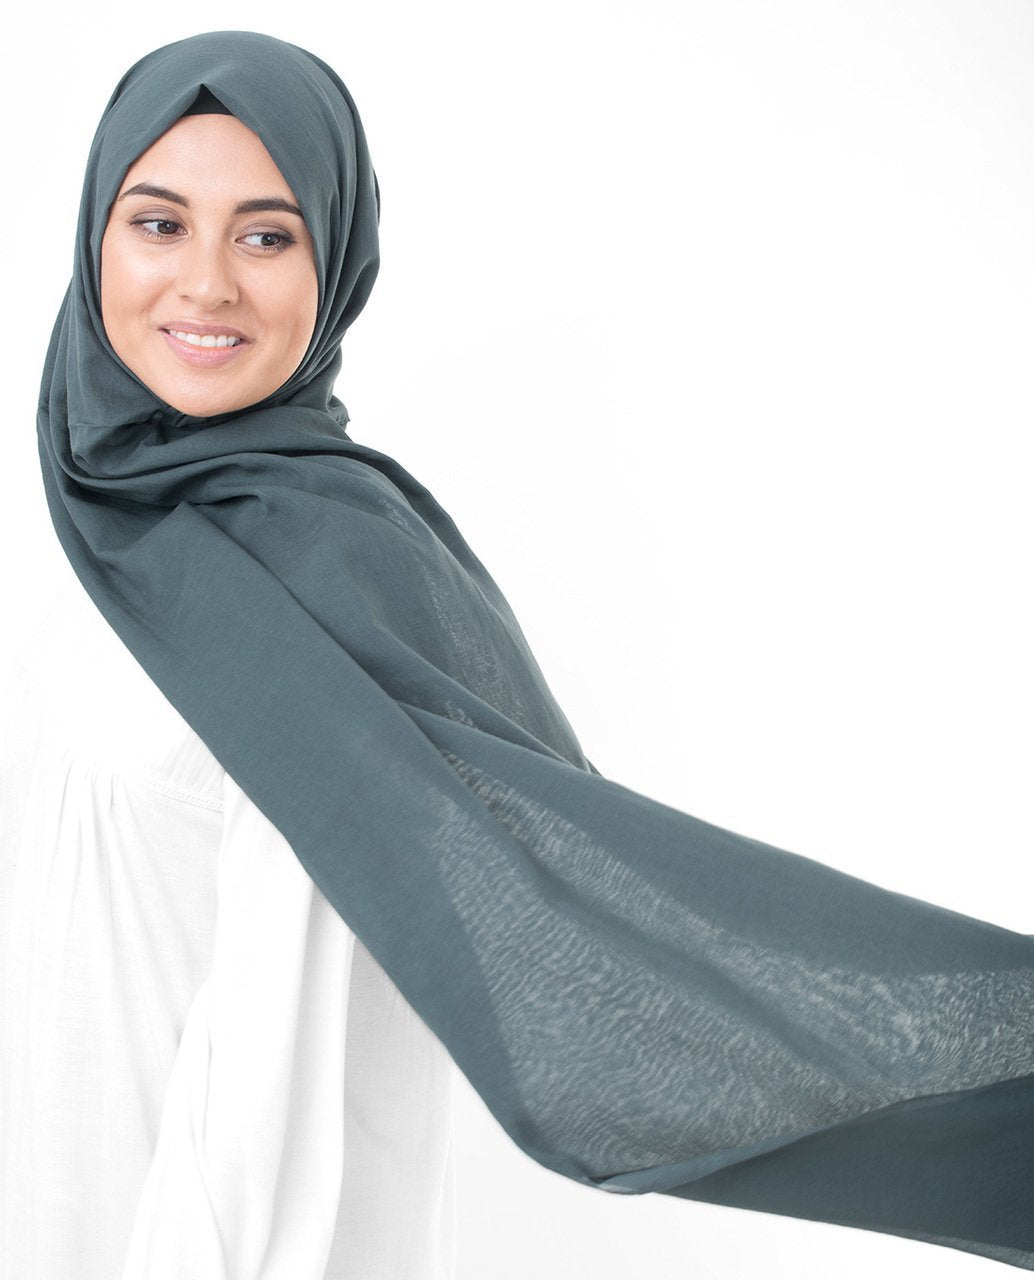 Cotton Voile Hijab in Dark Slate Blue Color Regular Dark Slate Blue 